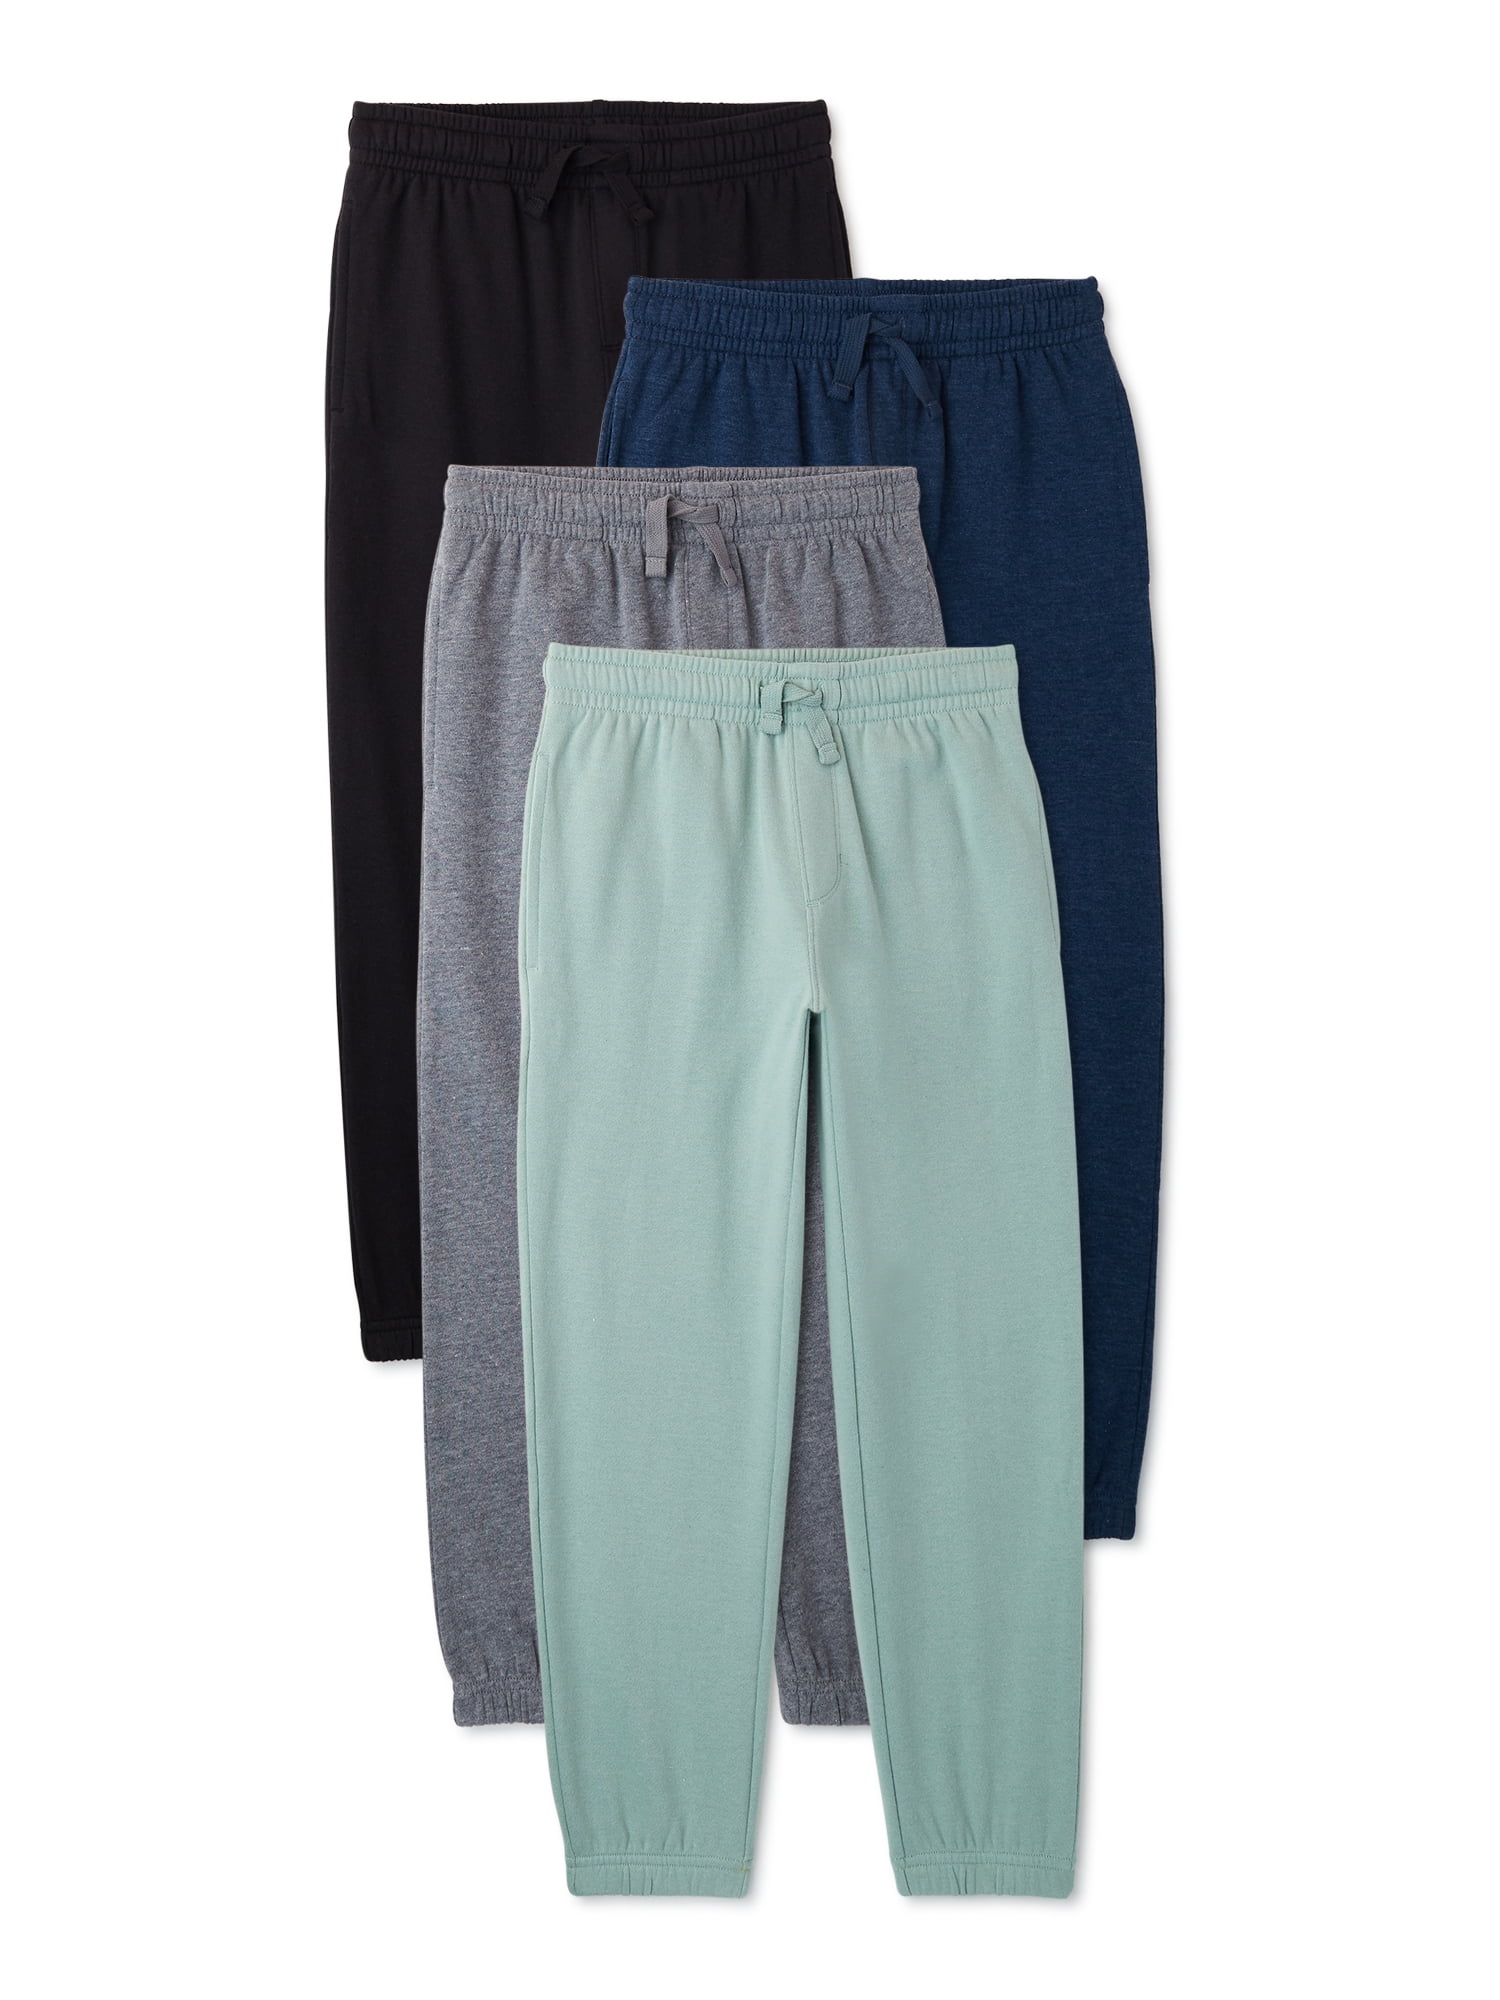 Quad Seven Boy’ Sweatpants Size: 8-18 4 Pack Active Fleece Joggers 